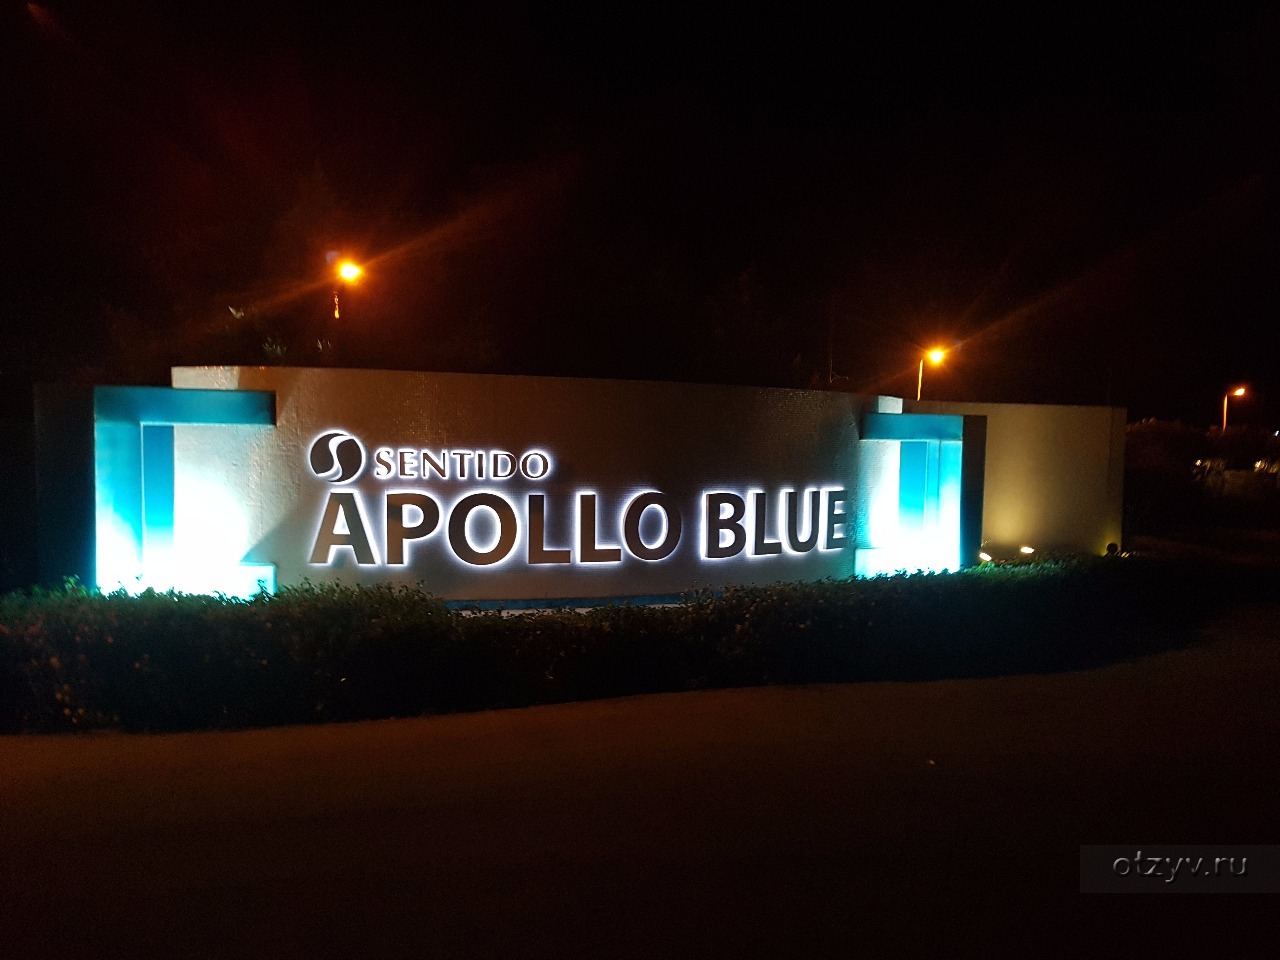 Sentido Apollo Blue